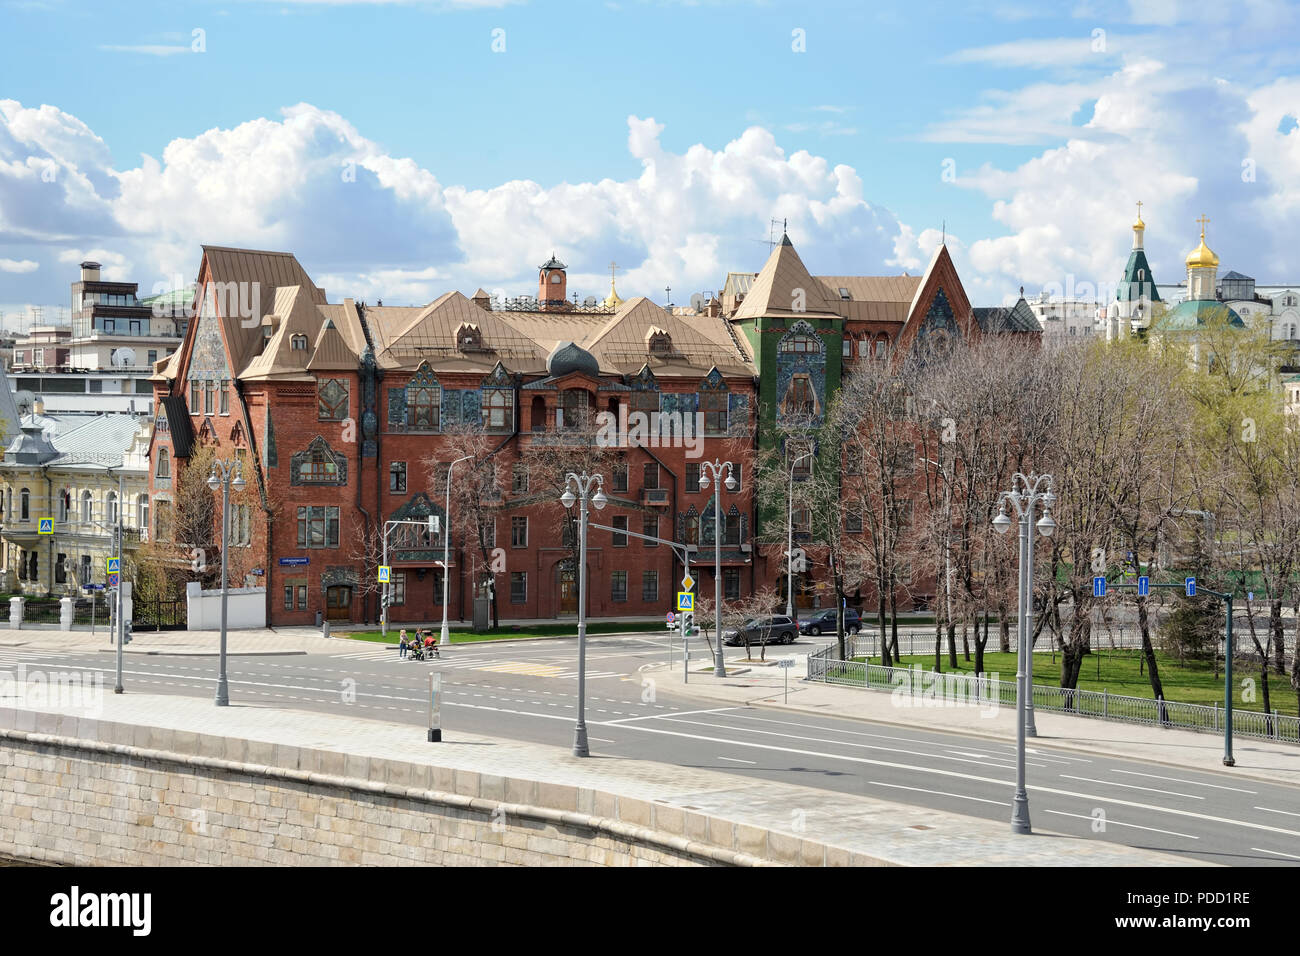 = Pertsov's Haus auf Prechistenskaya Damm im Frühjahr = Blick auf Pertsov's House von patriarchat Brücke an einem sonnigen Frühlingstag. Die revolutiona Stockfoto